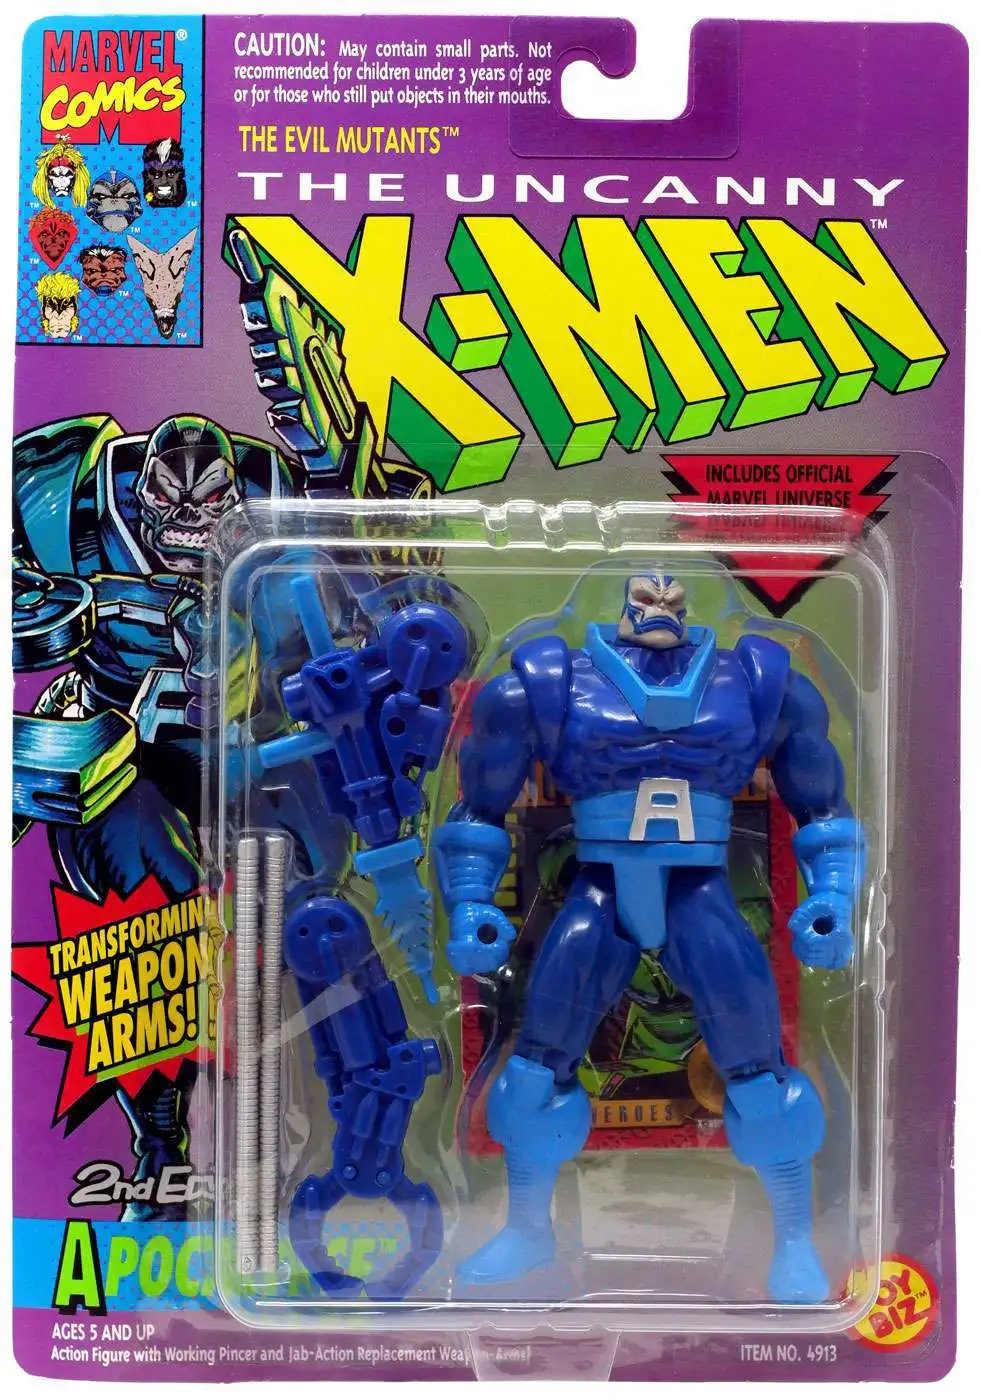 1993 Marvel Comics X-men Apocalypse Action Figure 2nd Edition for sale online 